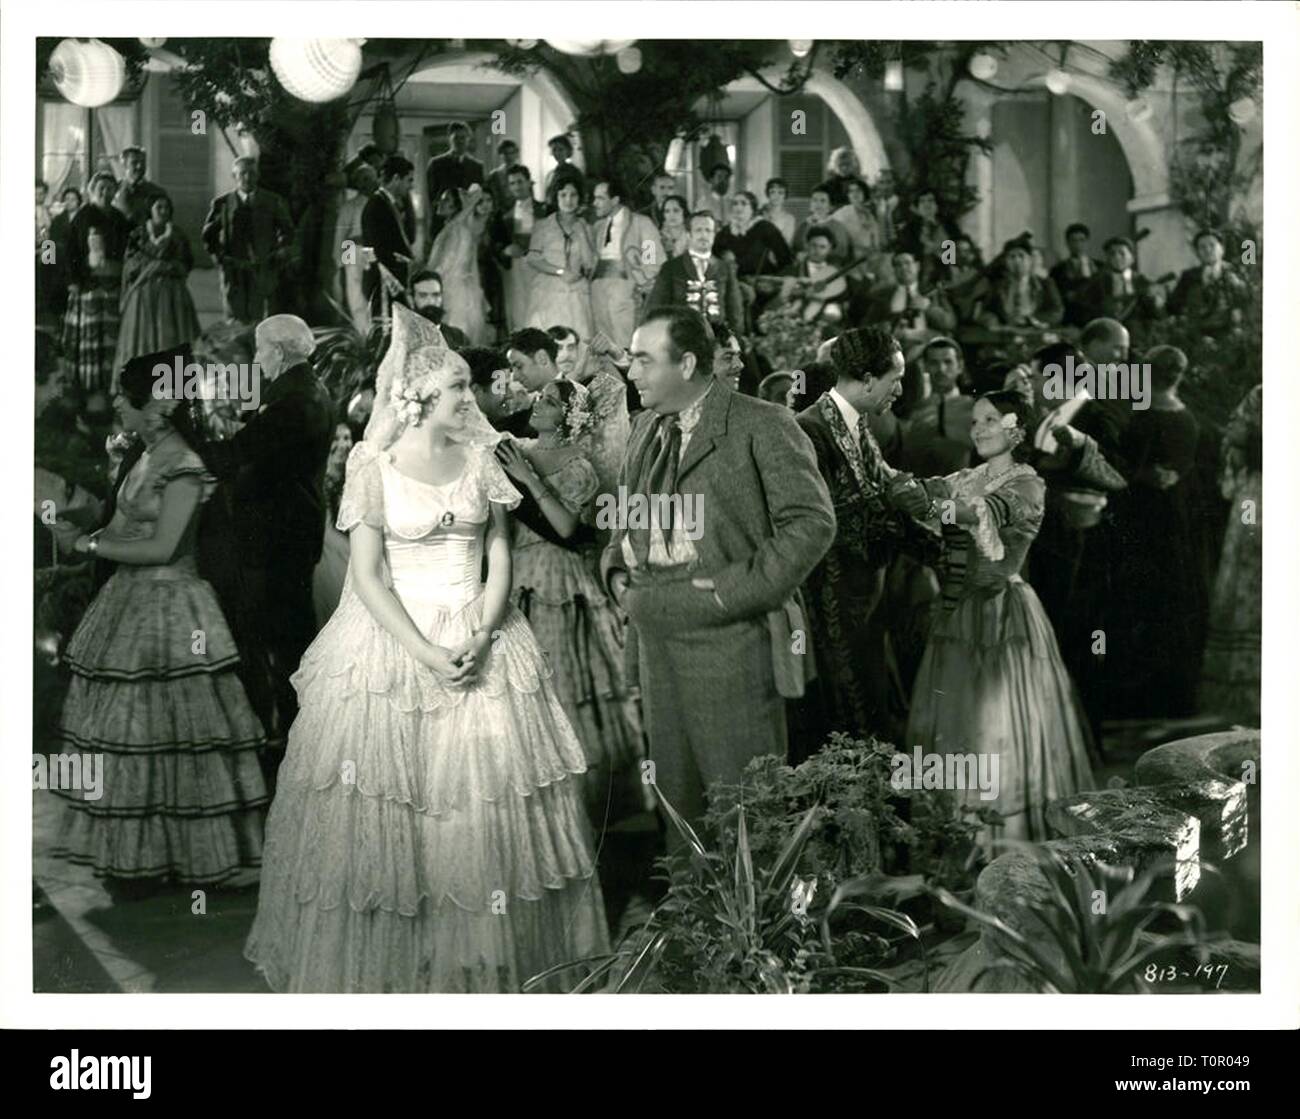 Santa Fe Trail ist ein 1940 amerikanischen Western Film unter der Regie von Michael Curtiz und Hauptdarsteller Errol Flynn, Olivia de Havilland, Raymond Massey, Ronald Reagan und Alan Hale. Von Robert Buckner, den Film geschrieben ist über die Wahrheit John Brown und seine Kampagne gegen die Sklaverei vor dem Amerikanischen Bürgerkrieg. In einer Nebenhandlung, J.E.B. Stuart und George Armstrong Custer konkurrieren um die Hand von Kit Carson Holliday. Der Film war einer der Top-verdienenden Filme des Jahres, und der siebte Flynn-de Havilland Zusammenarbeit. Sein Inhalt hat wenig Bedeutung für die tatsächliche Santa Fe Trail. Quelle: Hollywood Phot Stockfoto